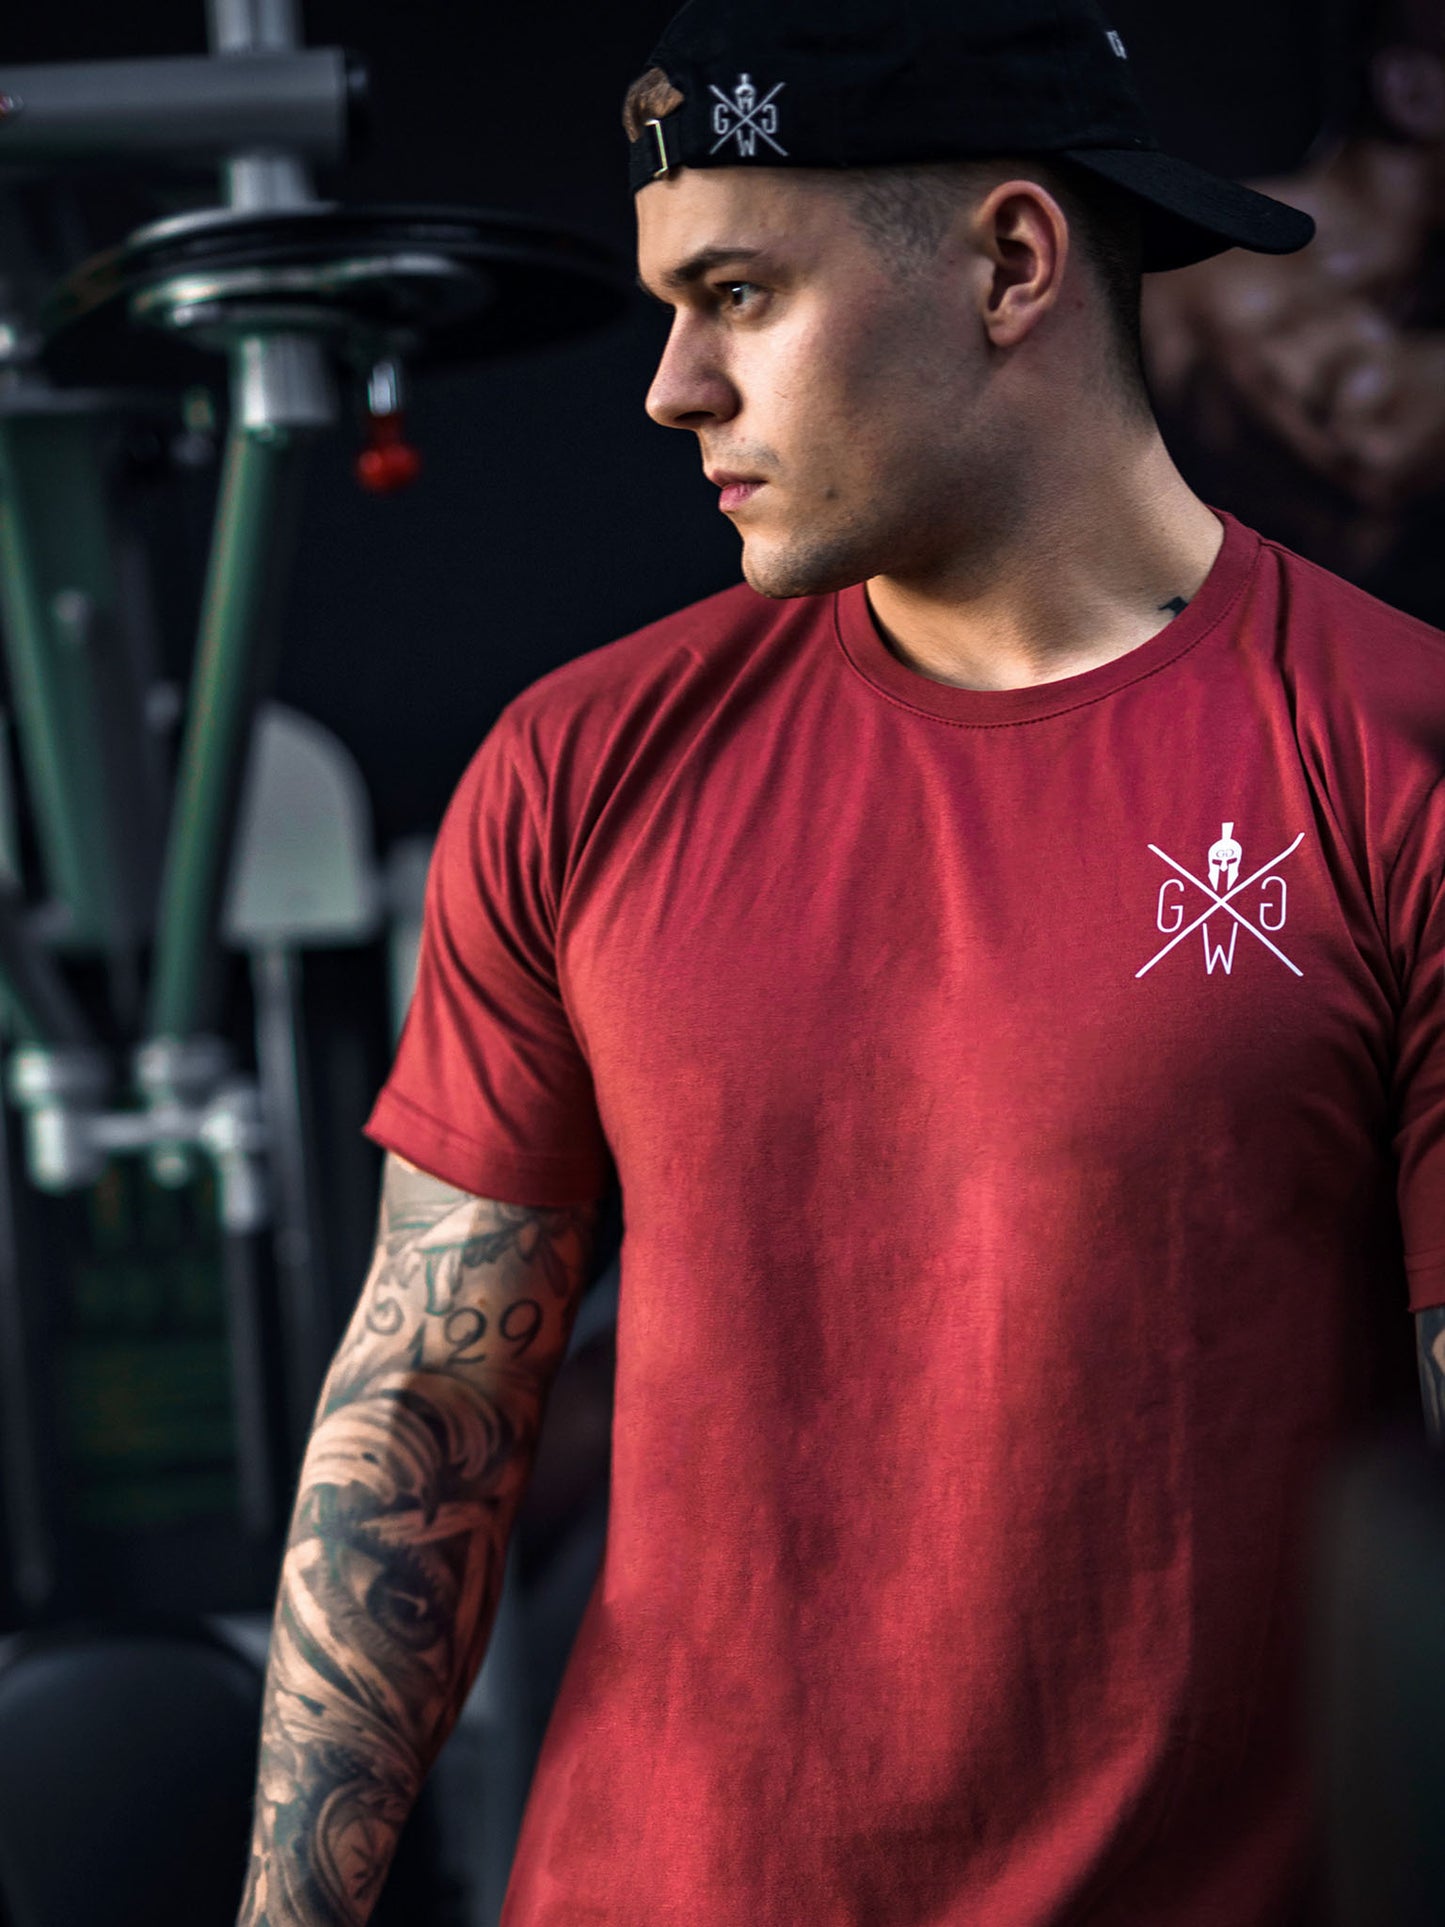 Vielseitiges und funktionales Herren T-Shirt in Bordeaux, ideal für das Fitnessstudio und den Alltag.